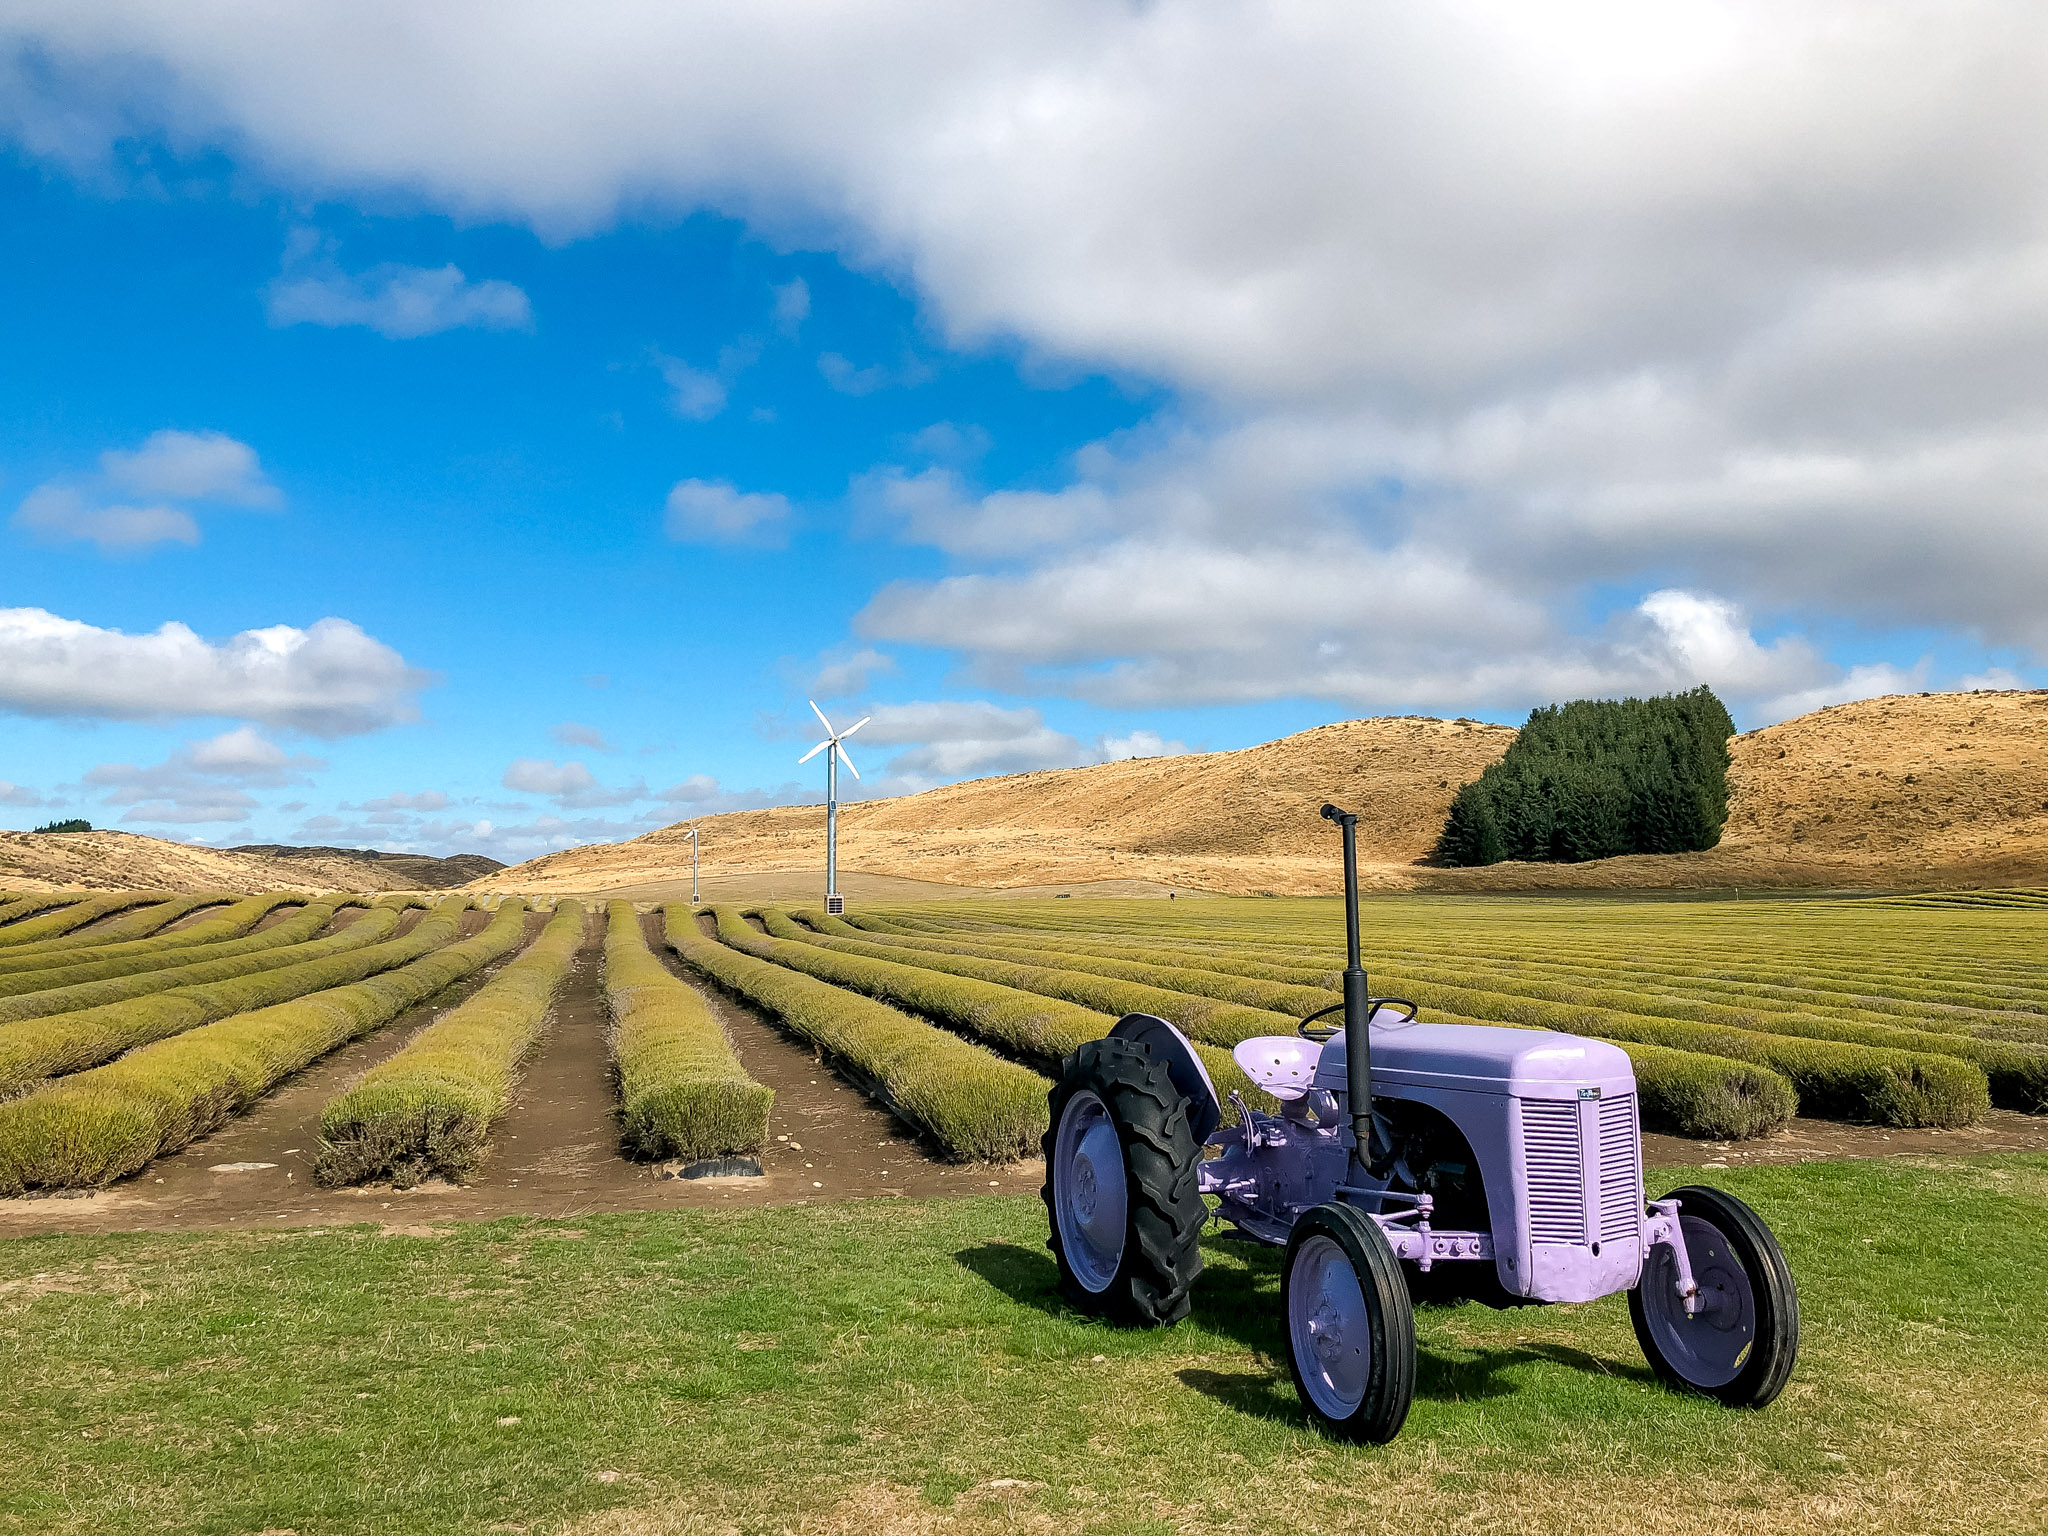 New Zealand lavender, New Zealand lavender farm, what to do in New Zealand, New Zealand trip, visit New Zealand, travel to New Zealand, what to do in South Island, South Island New Zealand